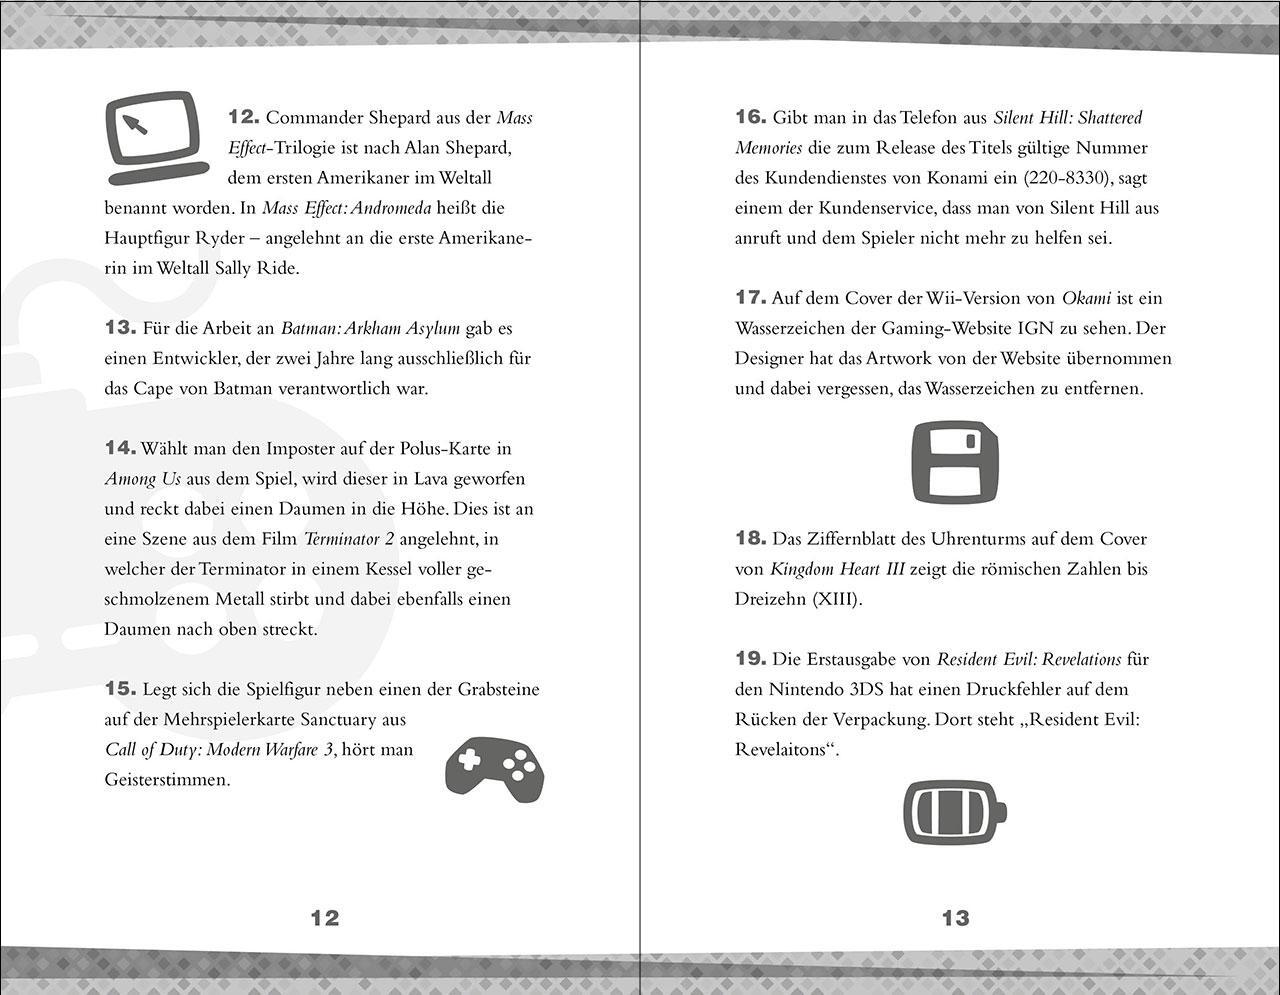 Bild: 9783743216143 | Unnützes Wissen für Gamer | Björn Rohwer | Taschenbuch | 144 S. | 2024